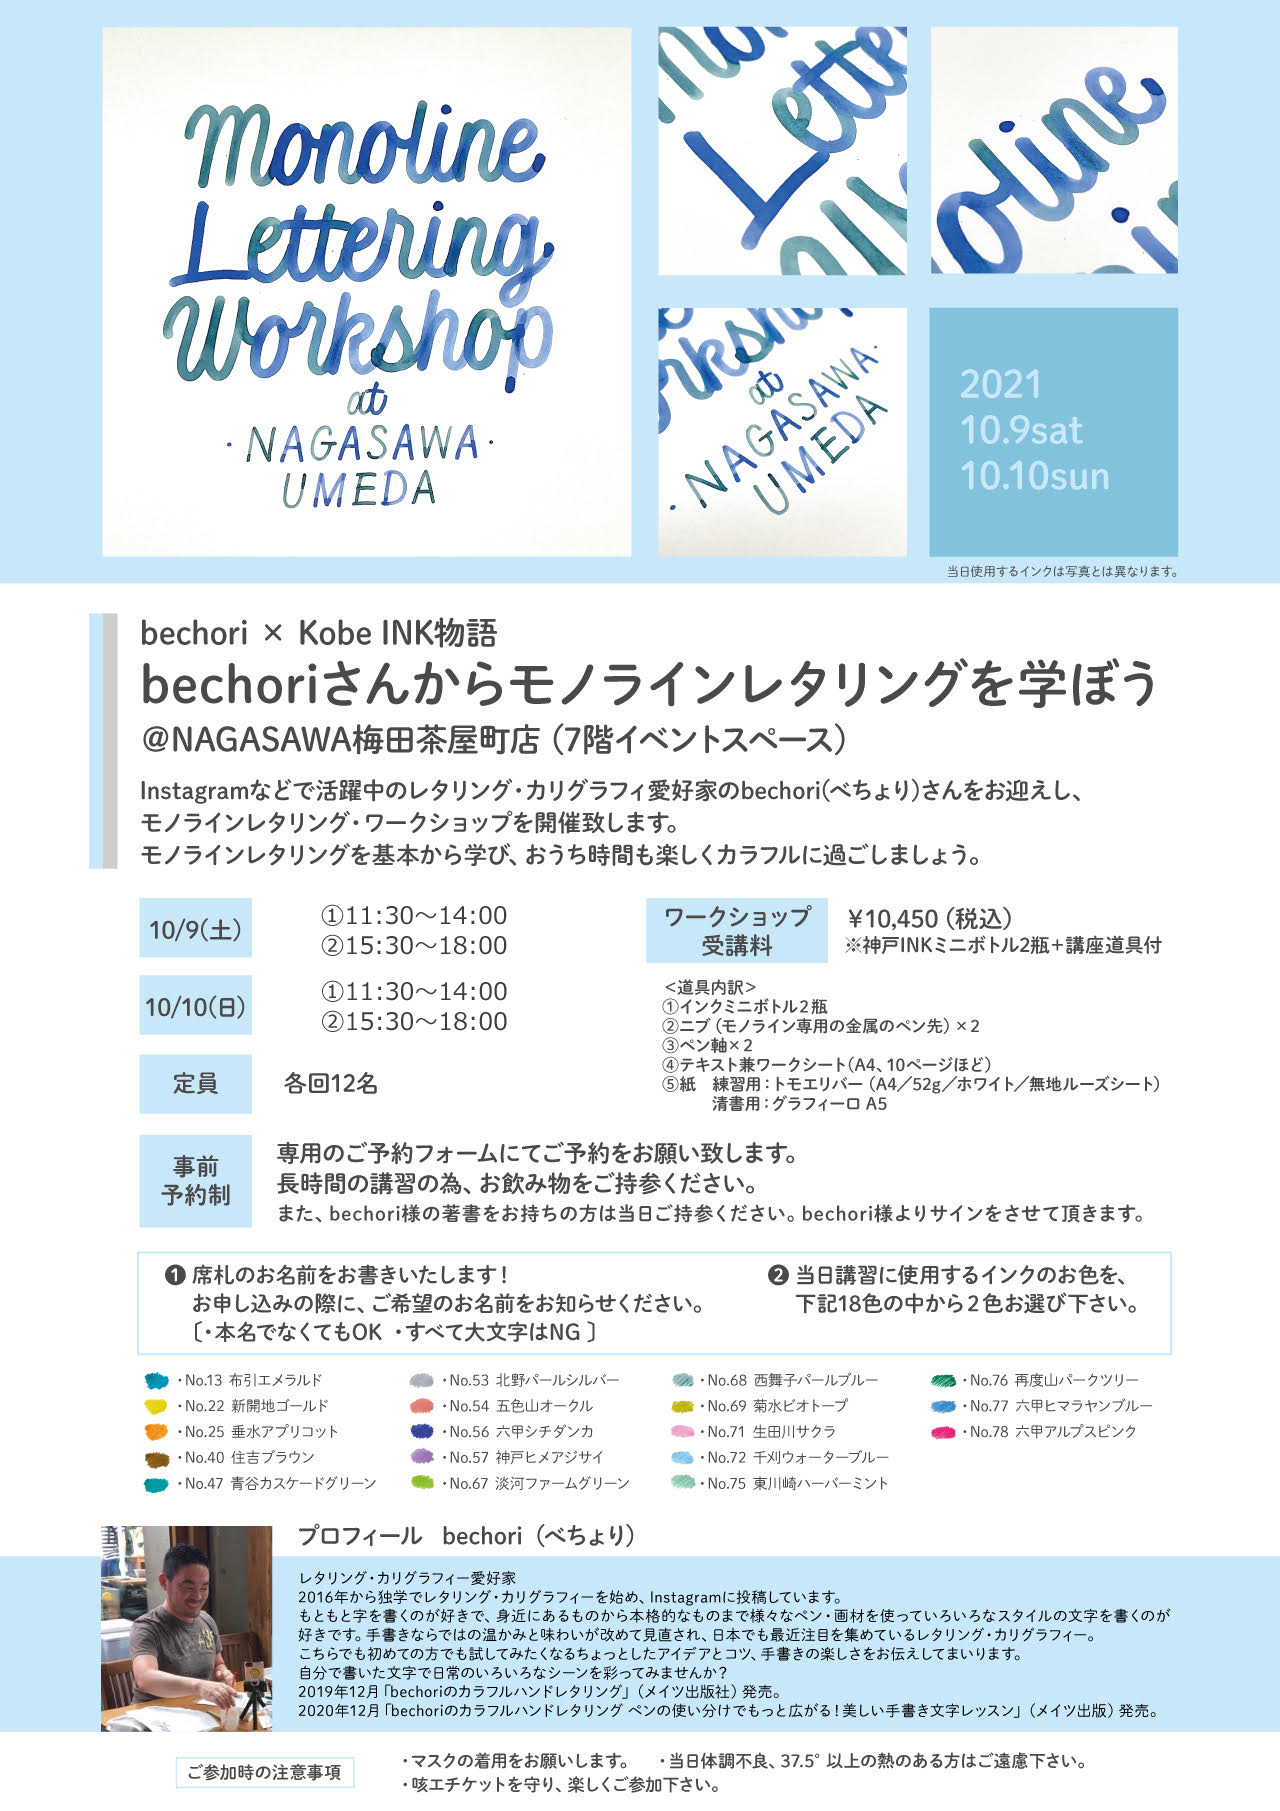 bechori × Kobe INK物語】bechoriさんからモノラインレタリングを学